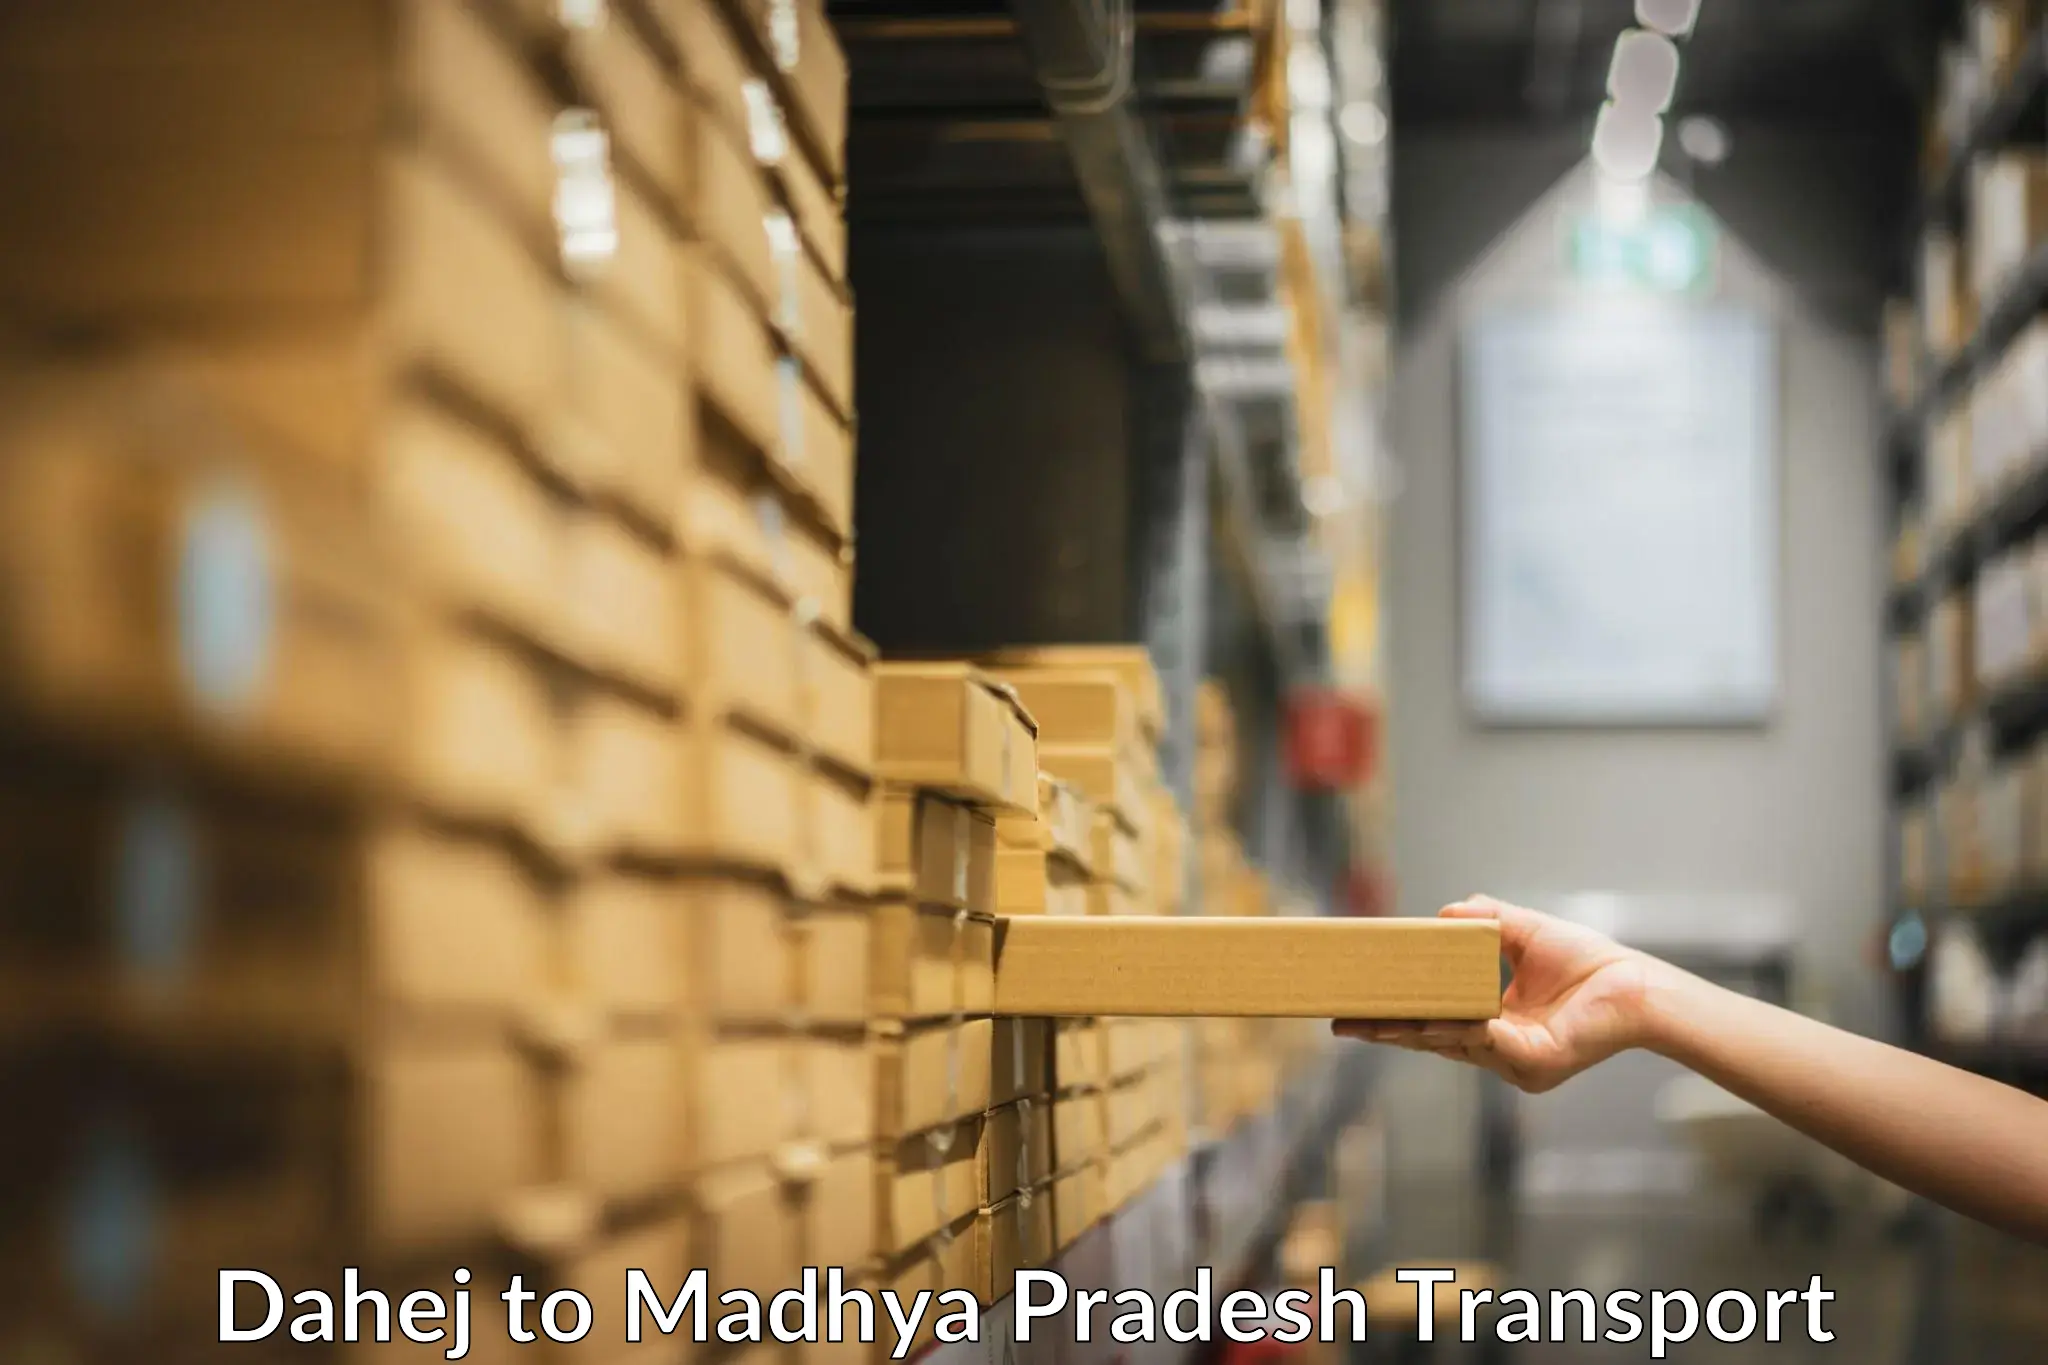 Lorry transport service Dahej to Madhya Pradesh